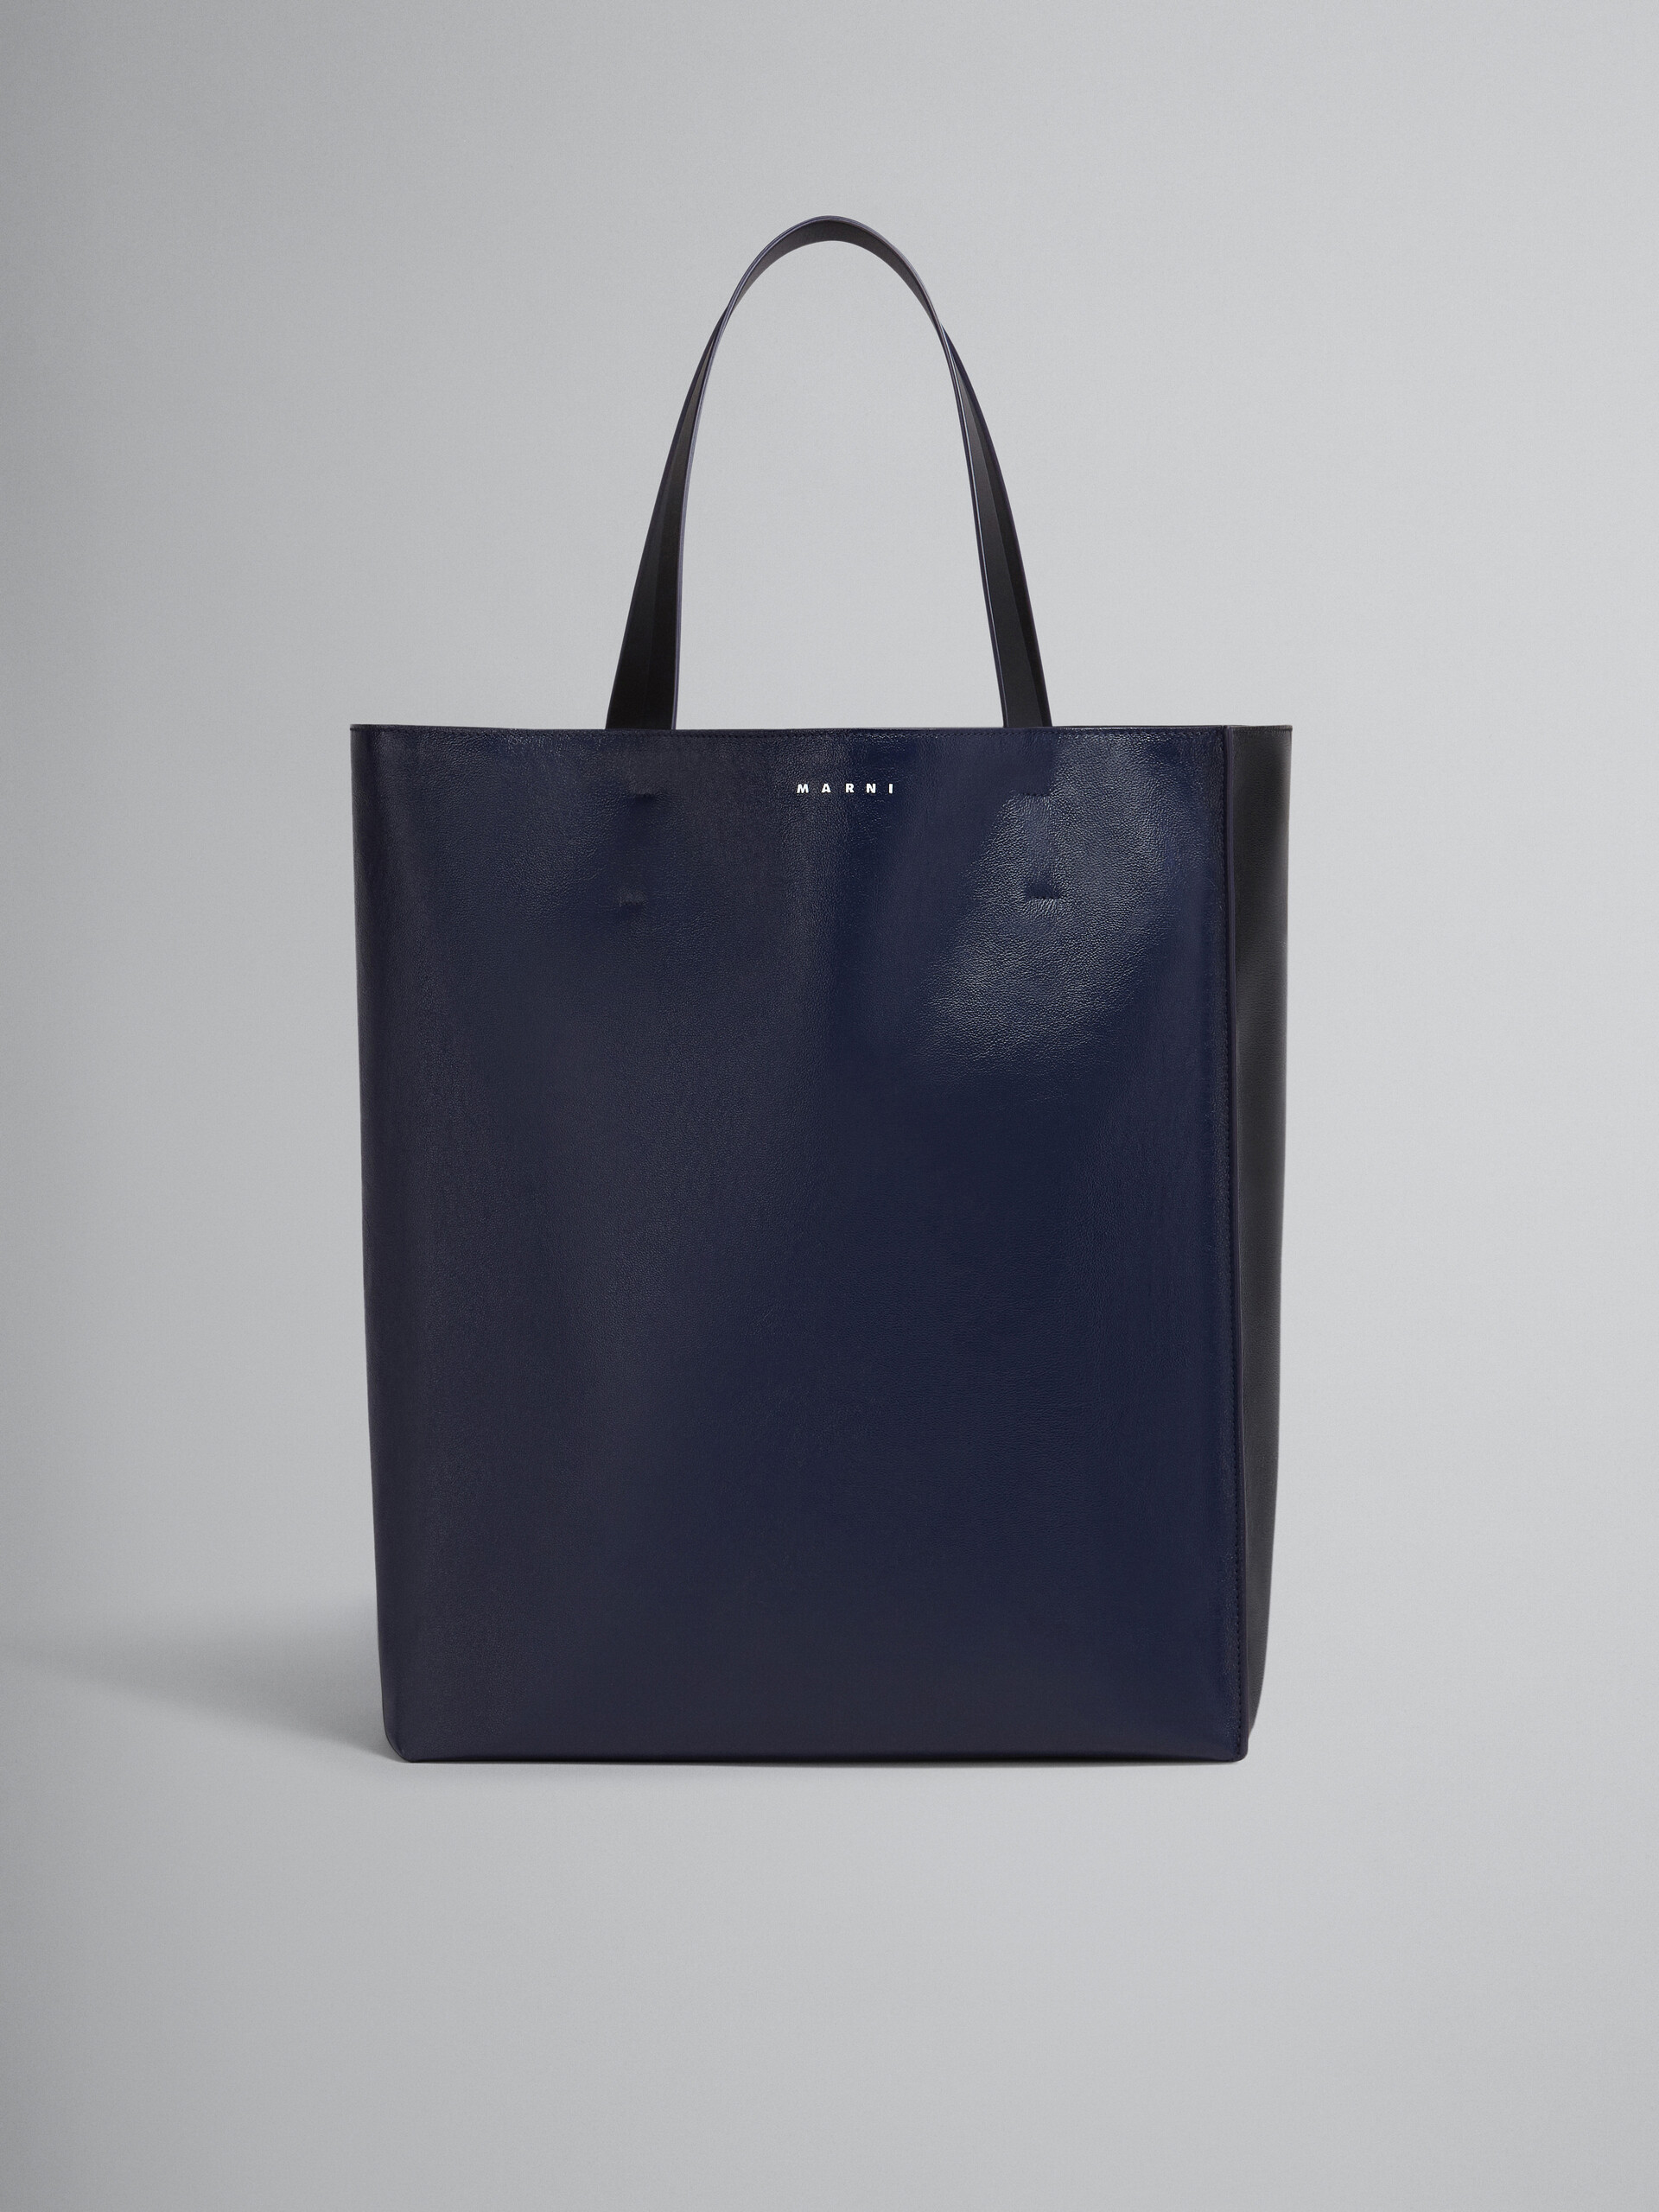 Große Tasche Museo Soft aus Leder in Schwarz und Blau - Shopper - Image 1